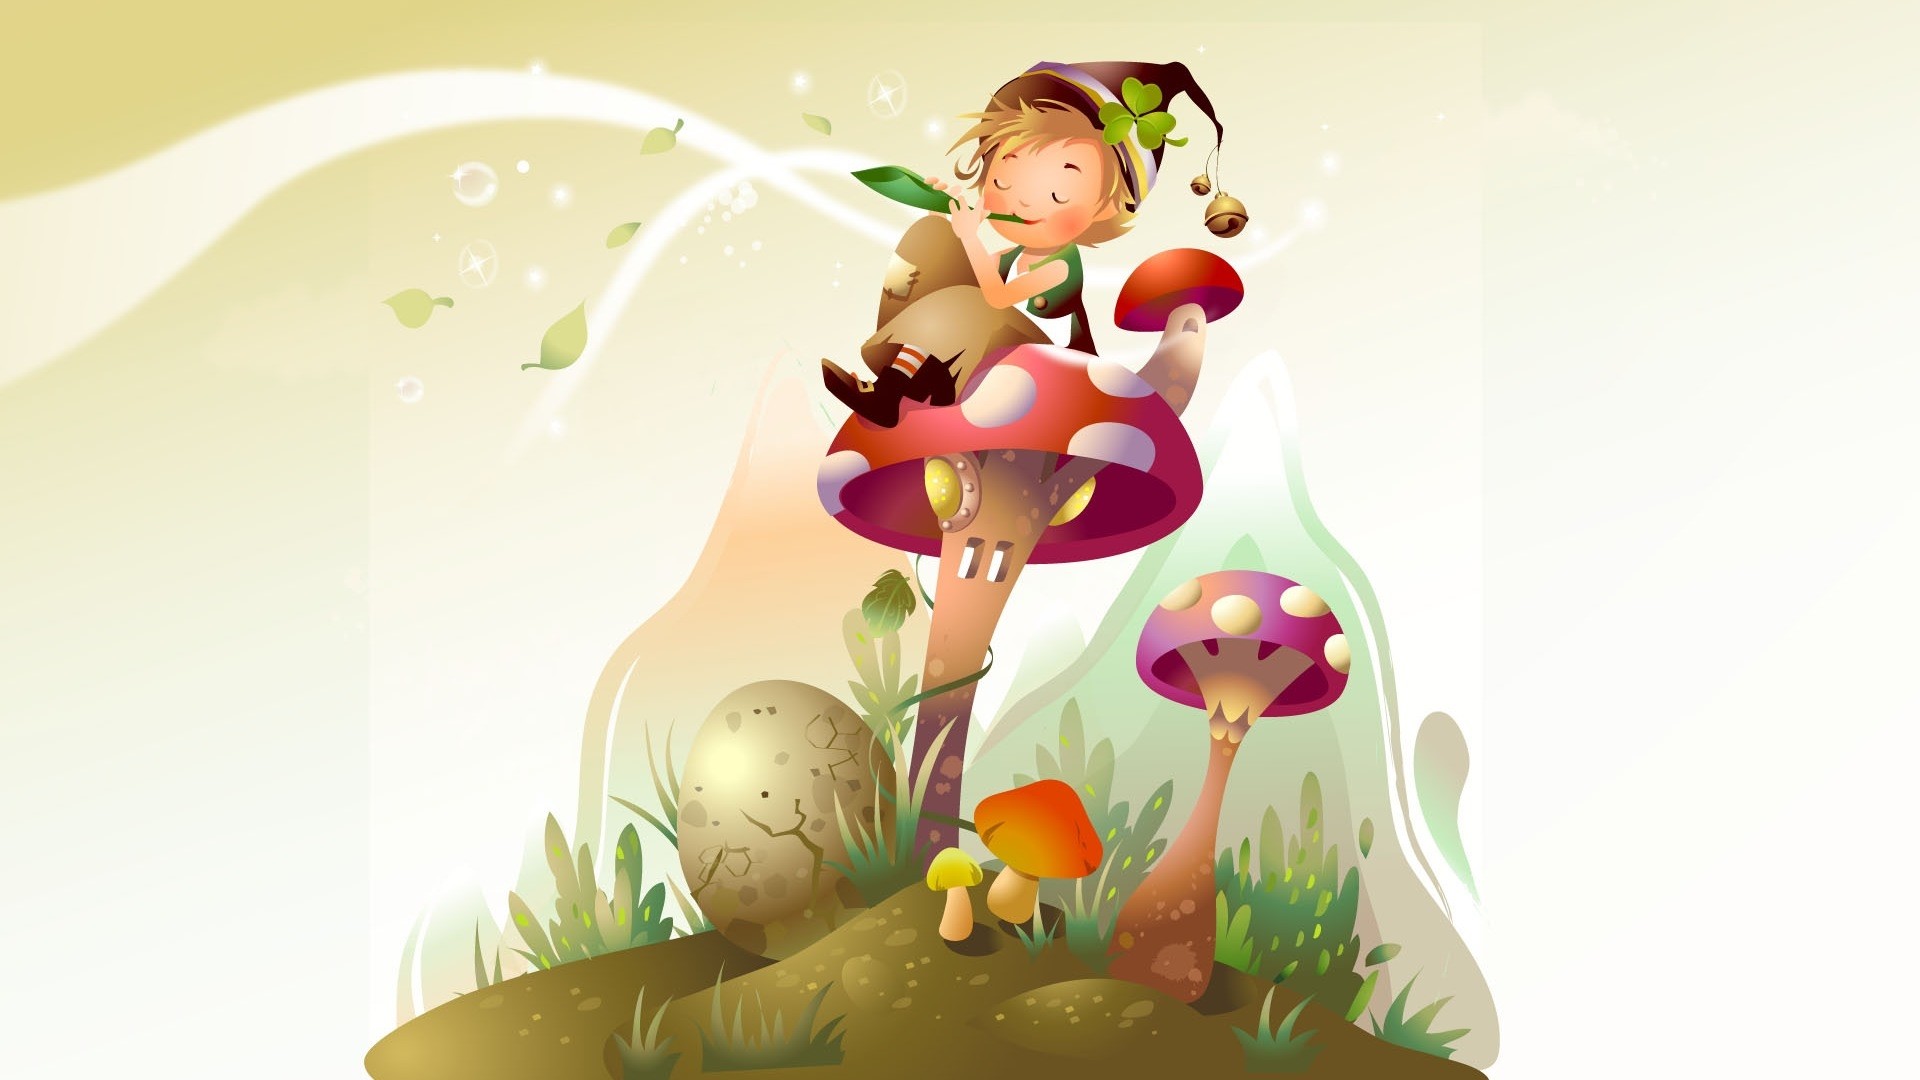 Cartoon Mushroom wallpaper for desktop